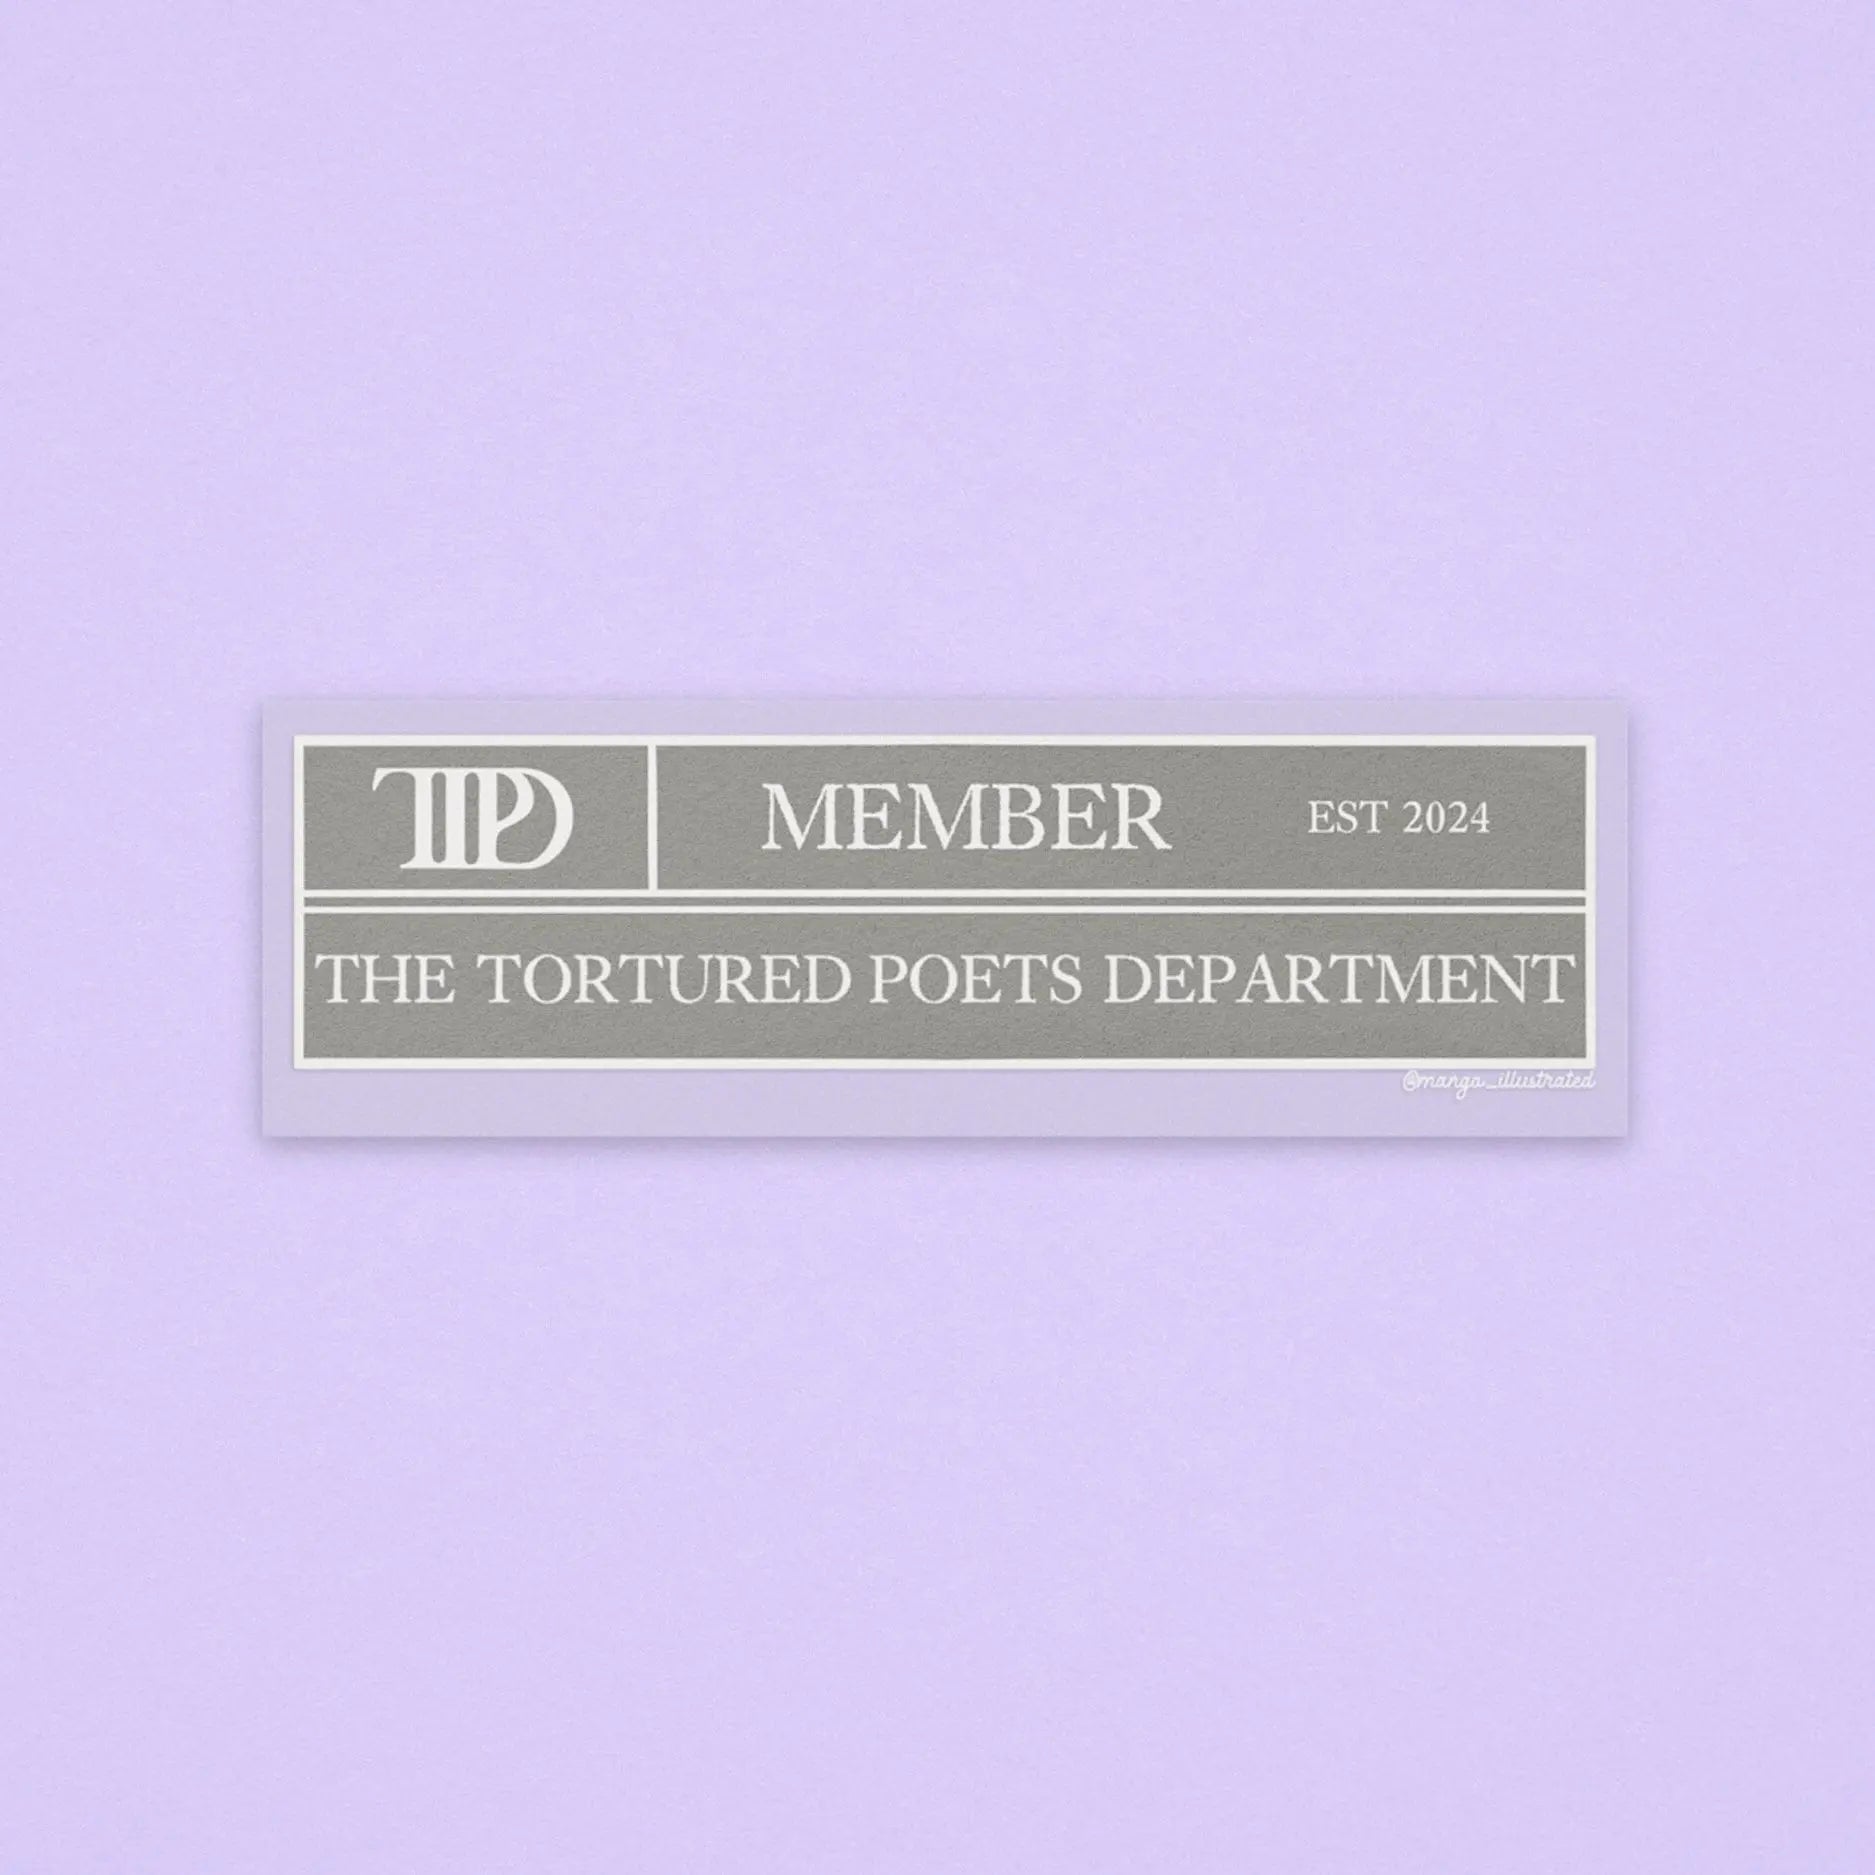 TTPD member sticker MangoIllustrated